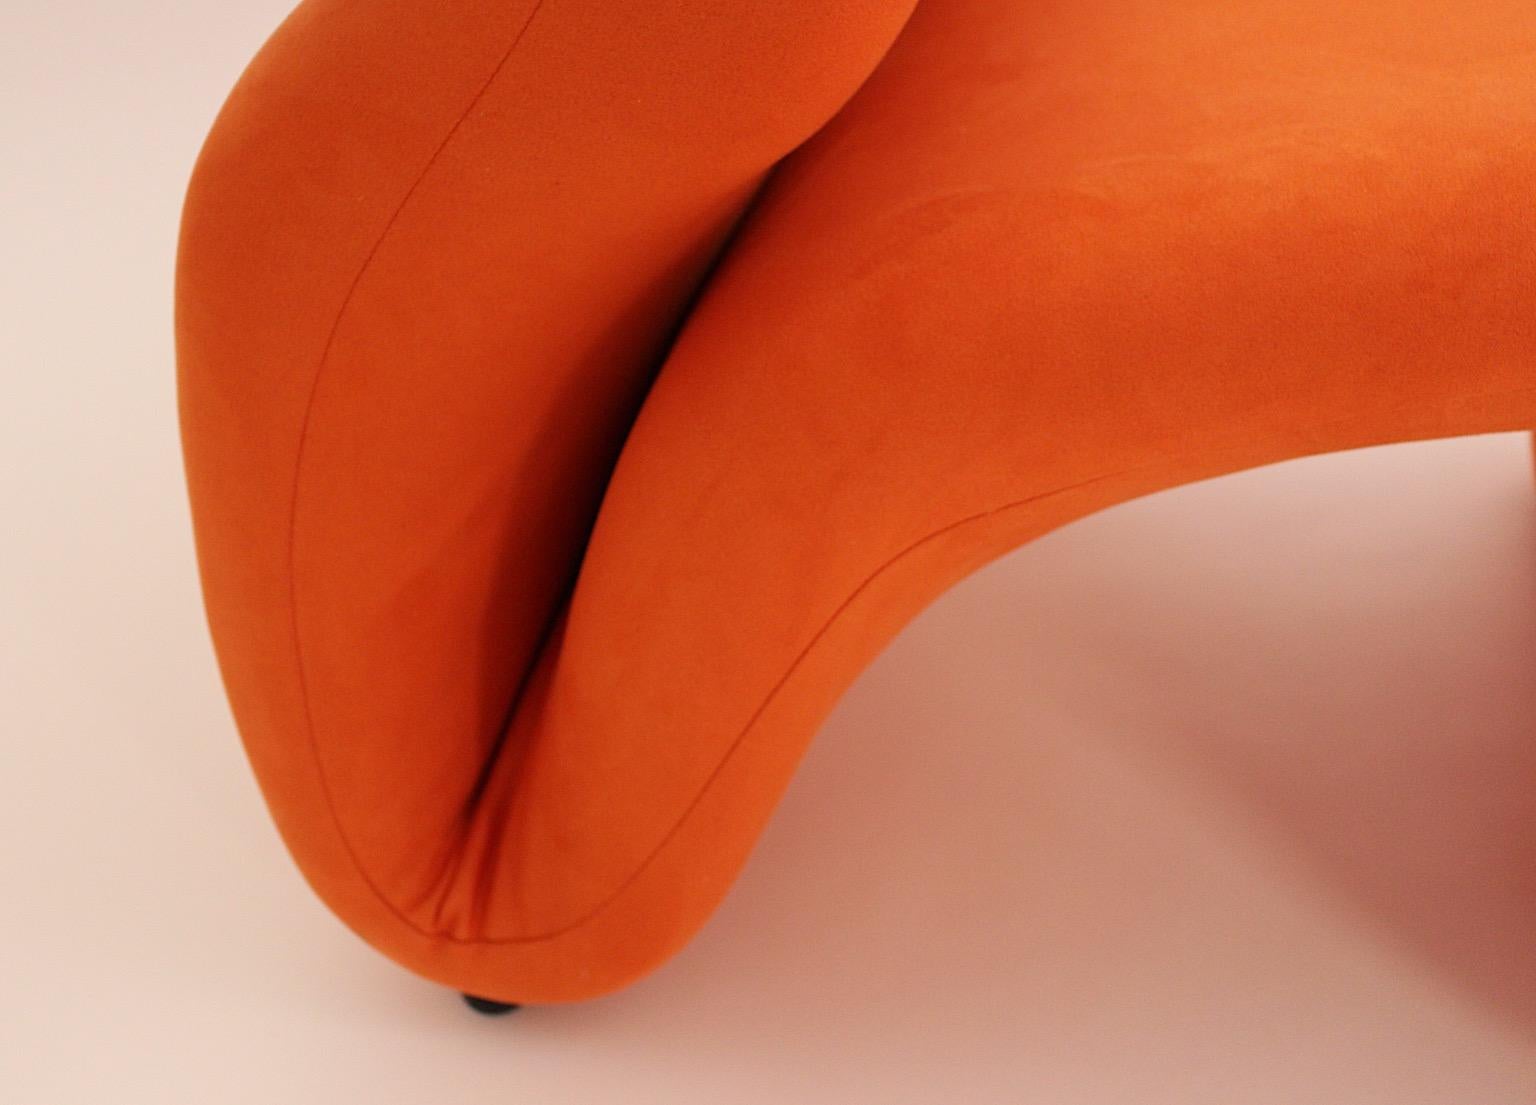 Space Age Vintage Sculptural Orange Etcetera Chair by Jan Ekselius 1970s Sweden 4